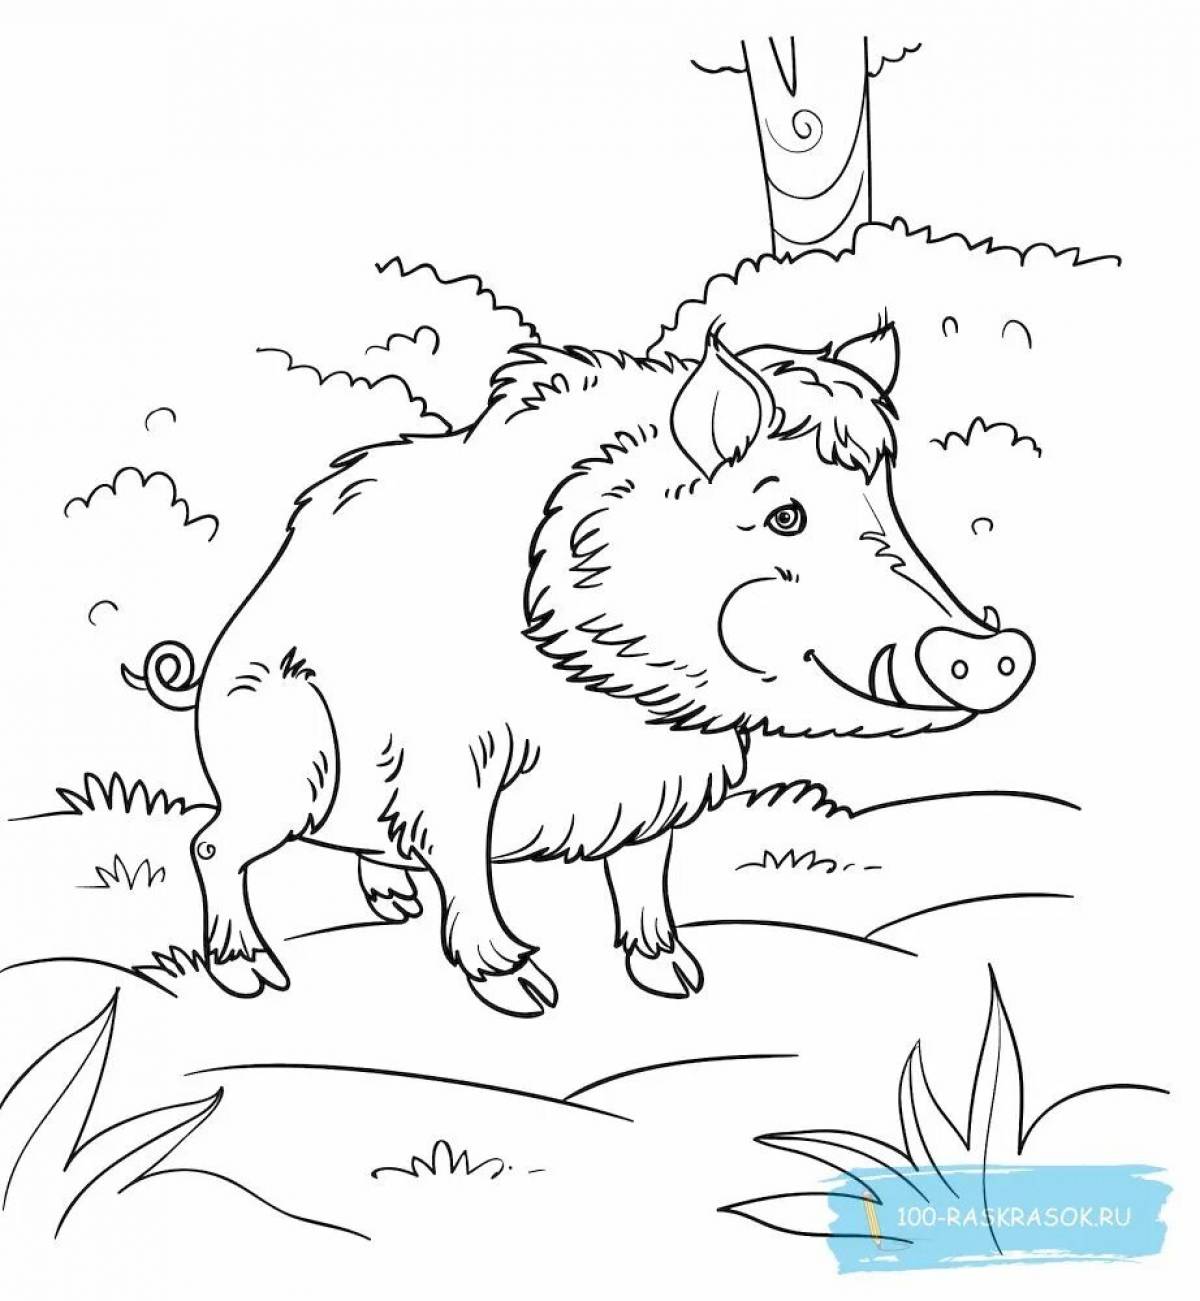 Ferocious boar coloring page